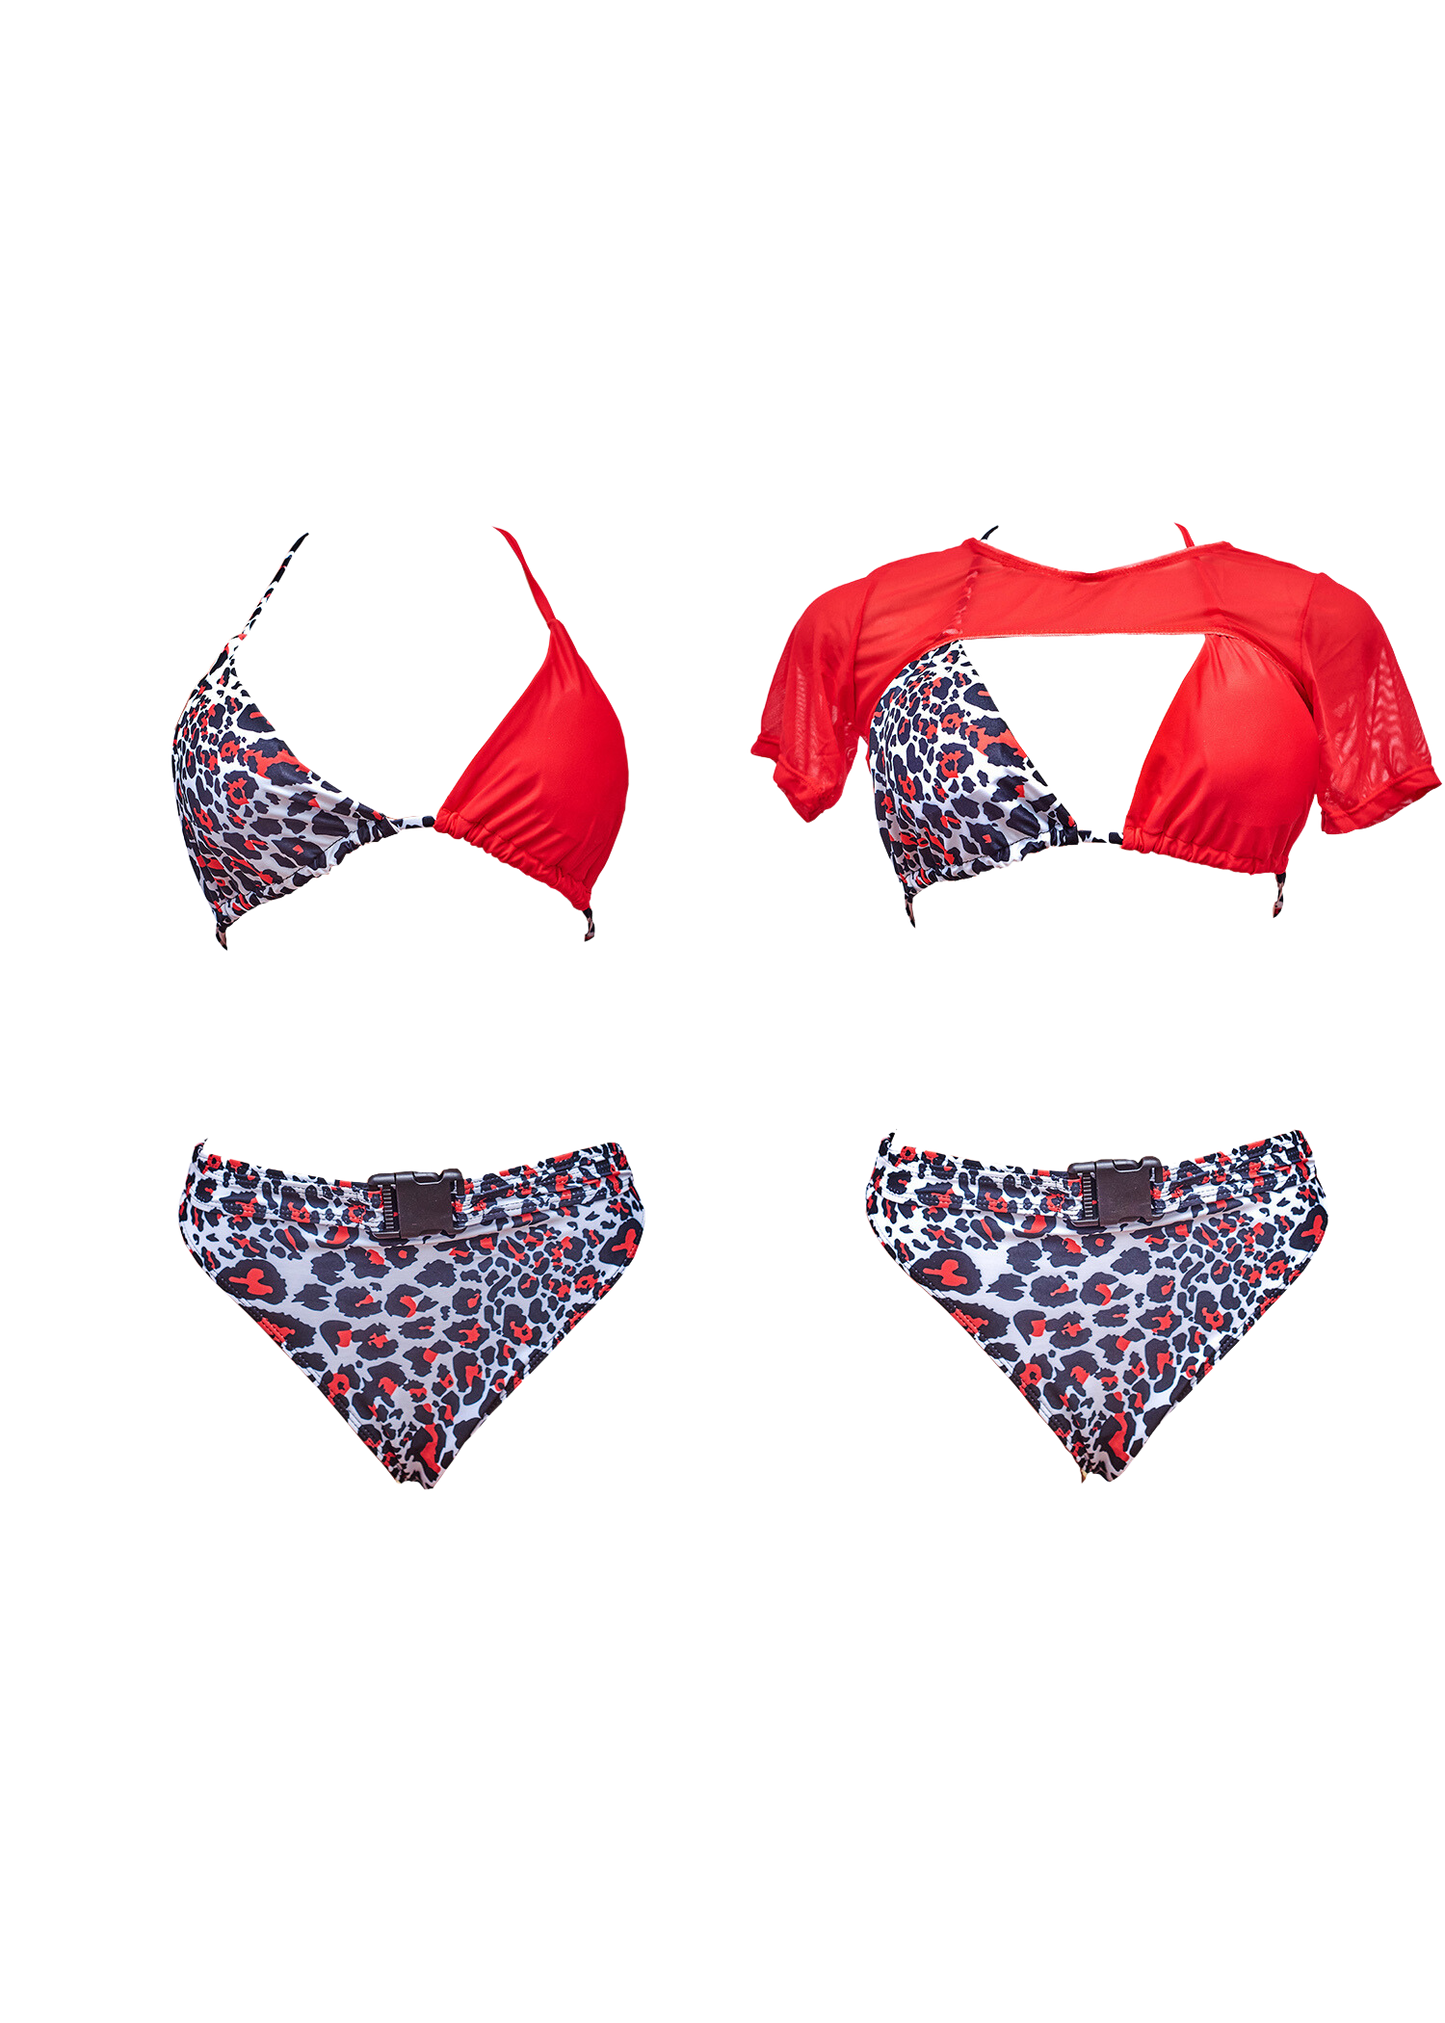 3 Piece Red Leopard Print Bikini + Shirt Set